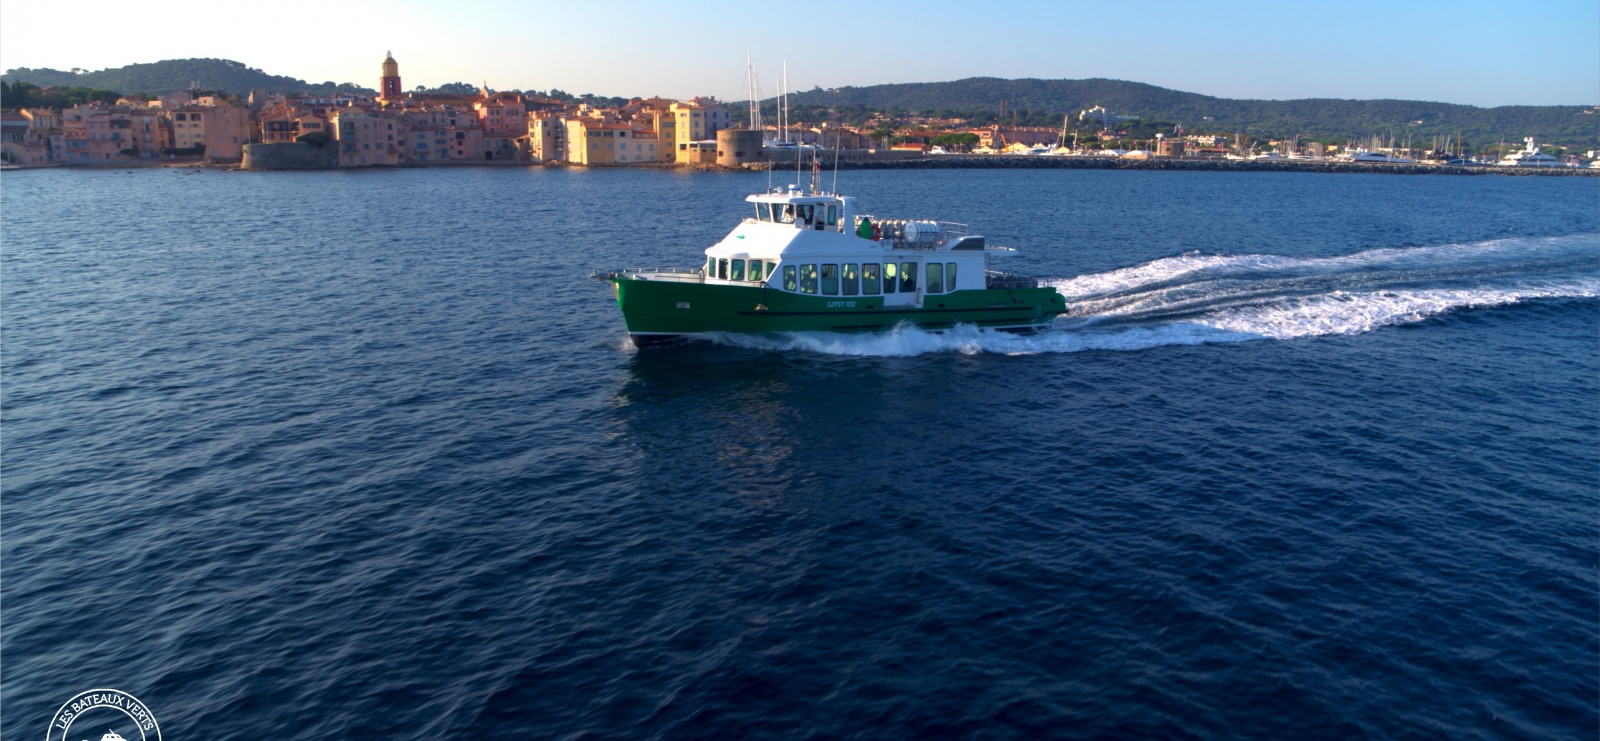 Les Bateaux Verts service de navettes les Issambres - Saint Tropez